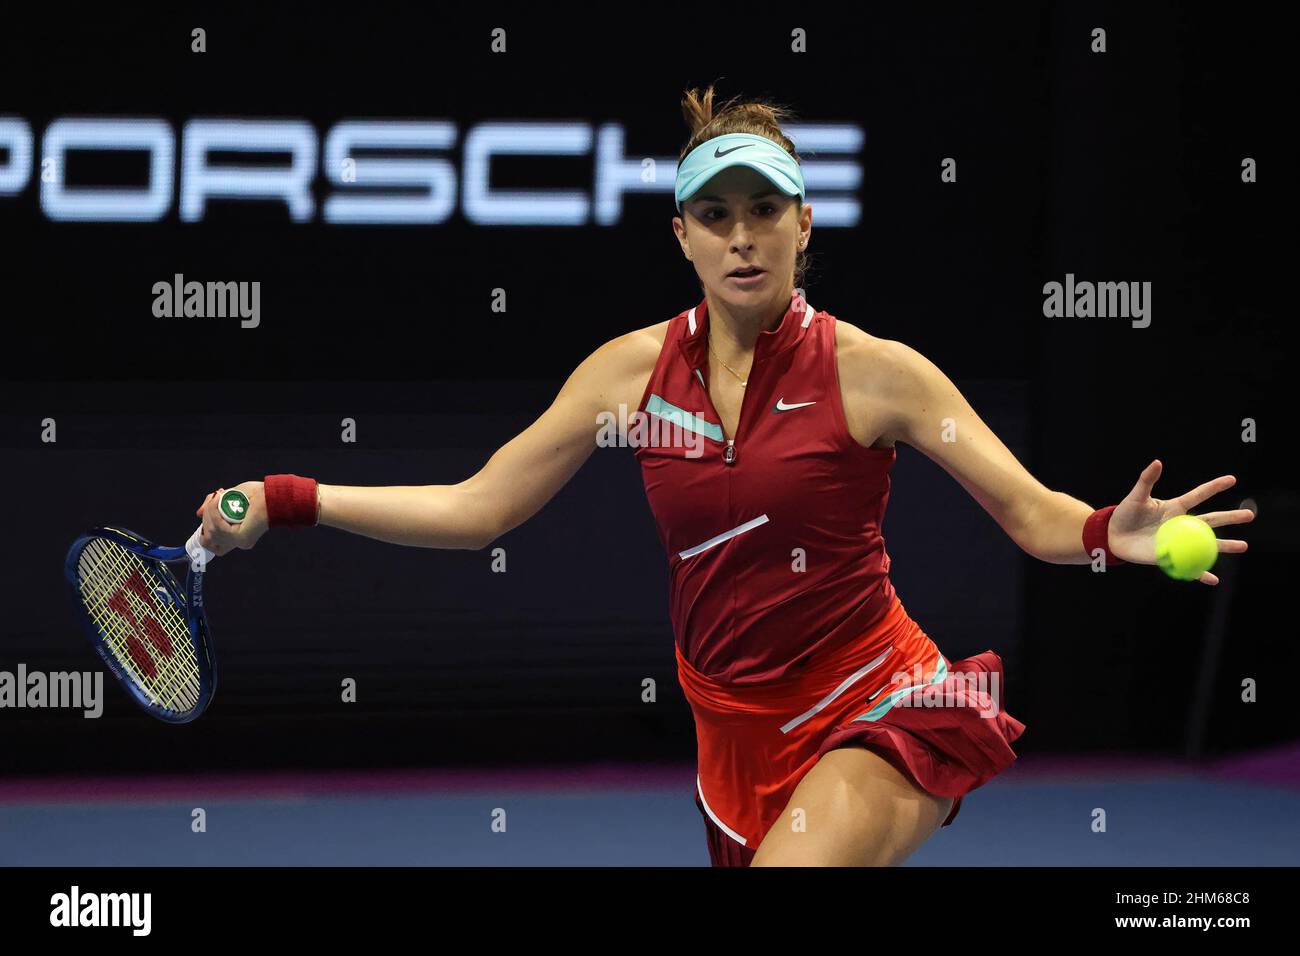 Belinda Bencic of Switzerland plays against Veronika Kudermetova of Russia during the St